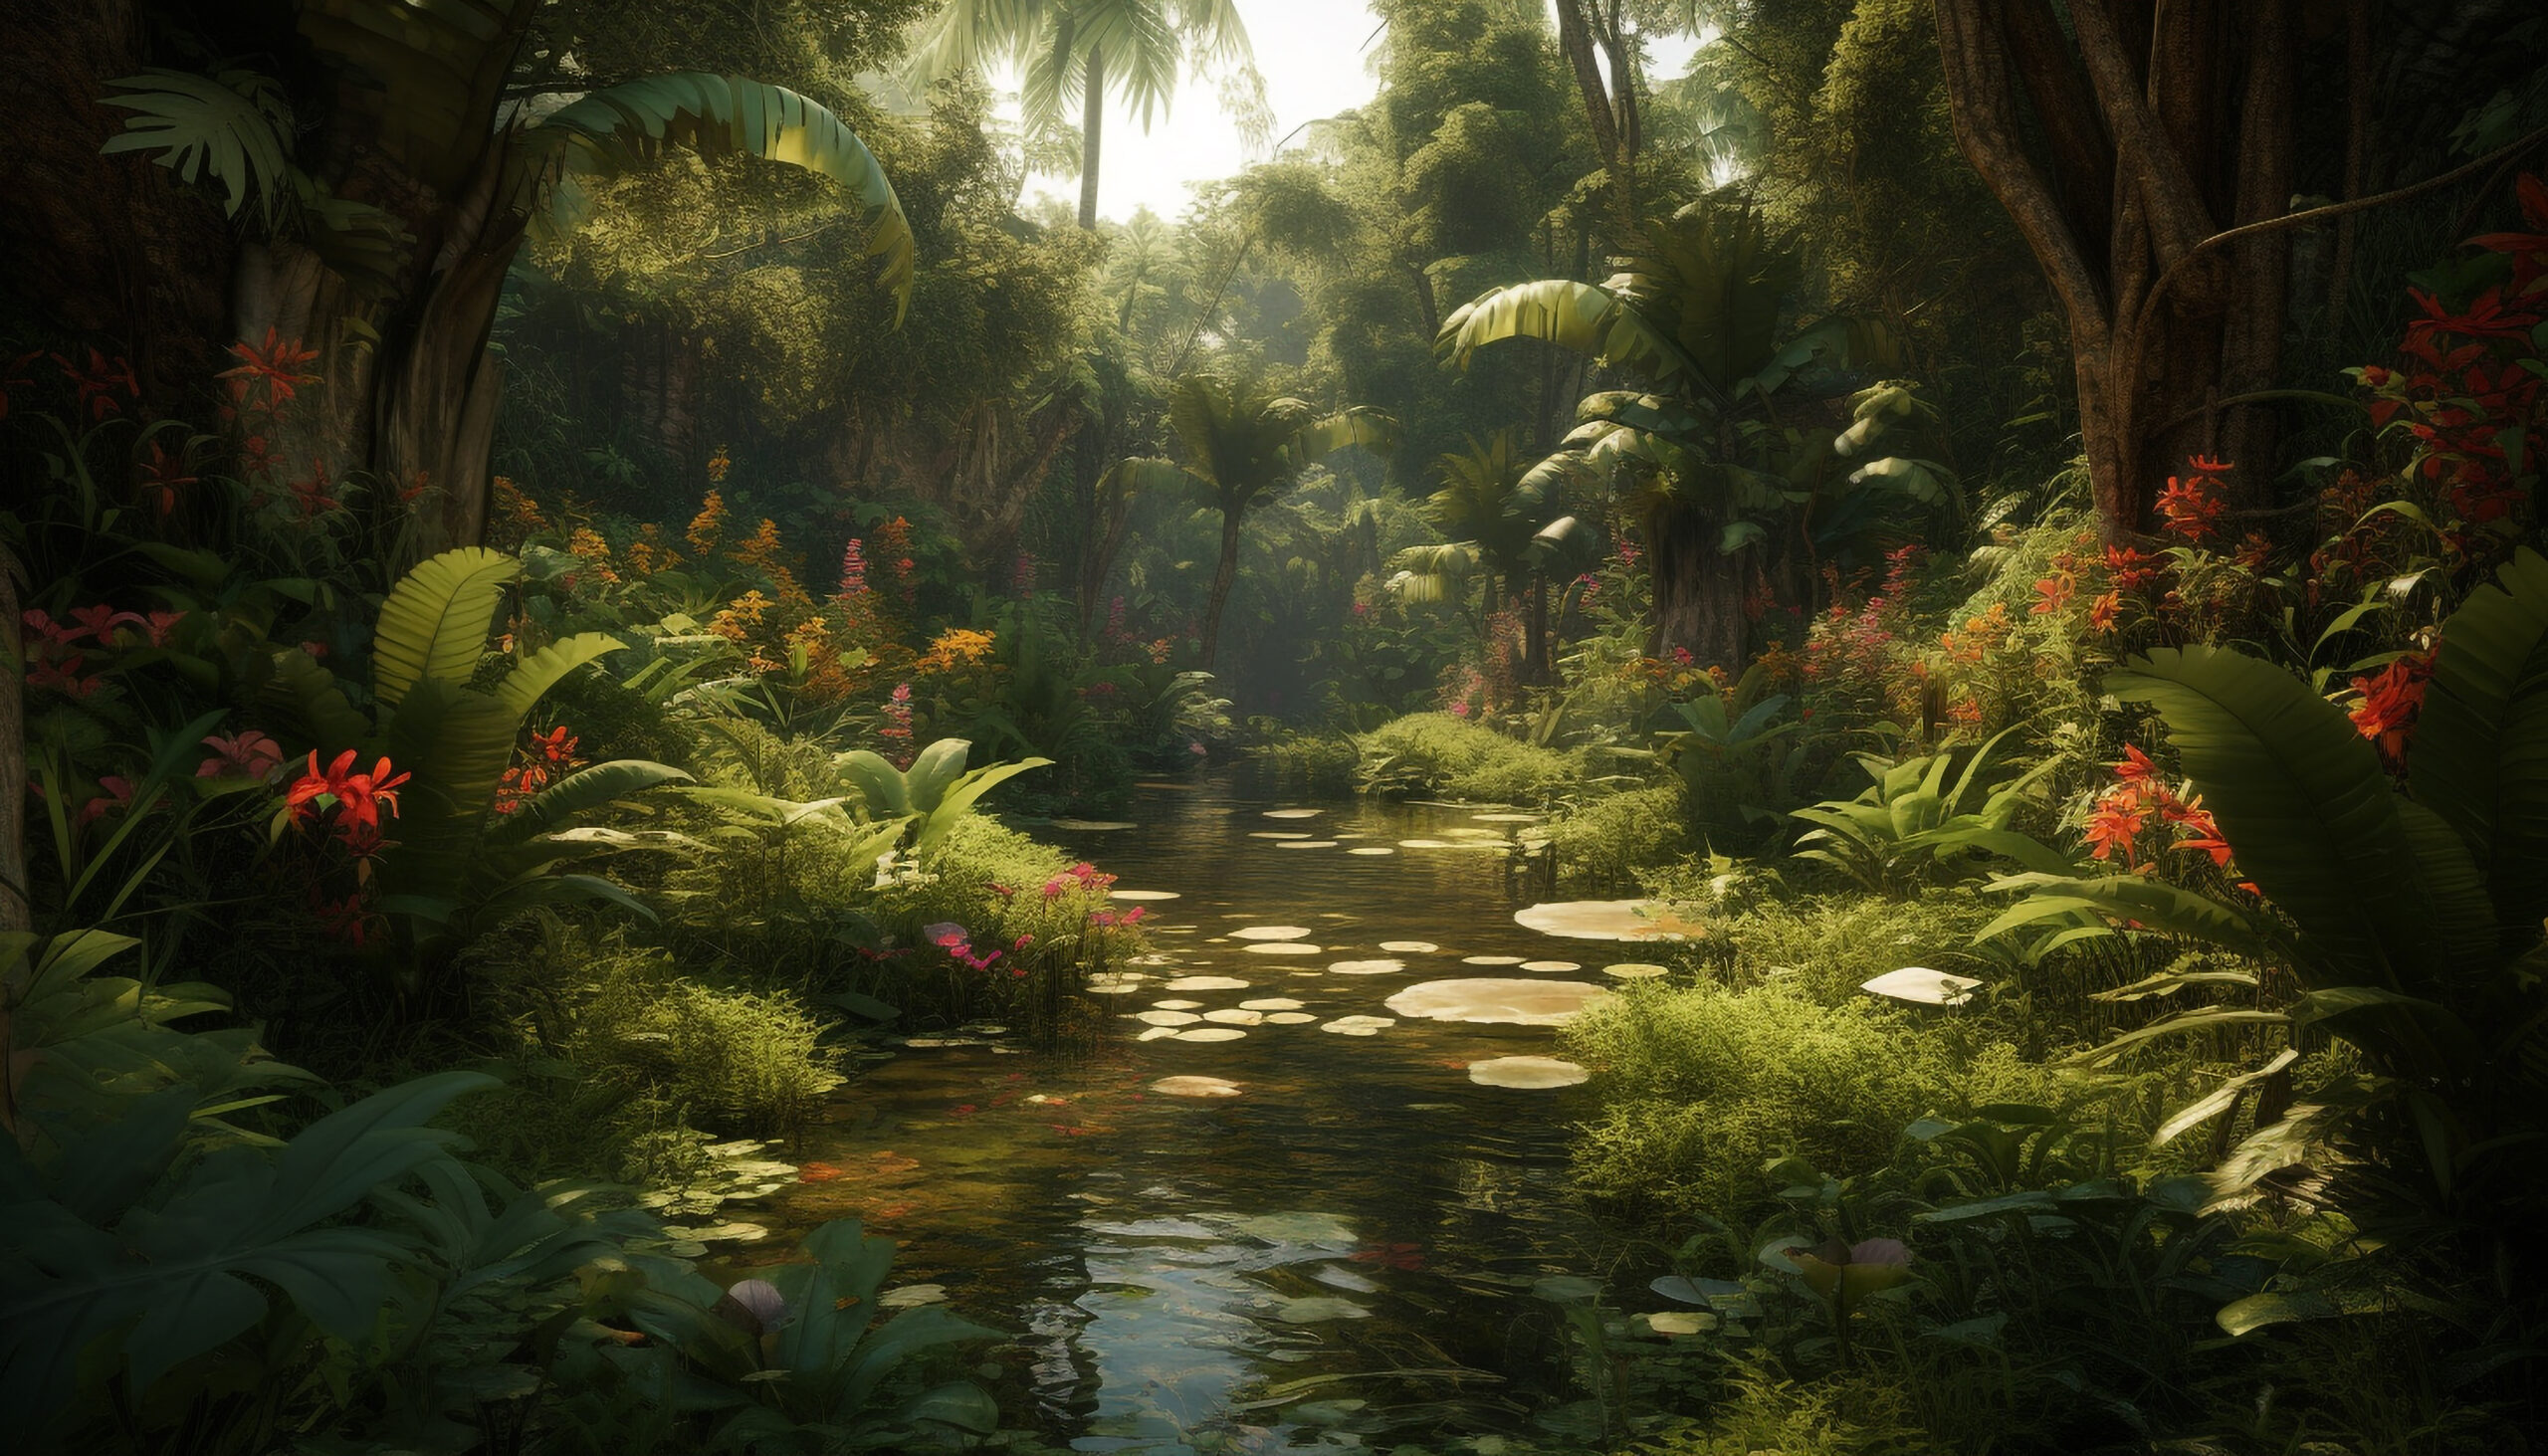 Na tym malowniczym obrazku przedstawiono uroczy ogród w stylu Eden, pełen egzotycznych roślin, soczystej zieleni i kaskadujących wodospadów, tworzący rajską oazę spokoju